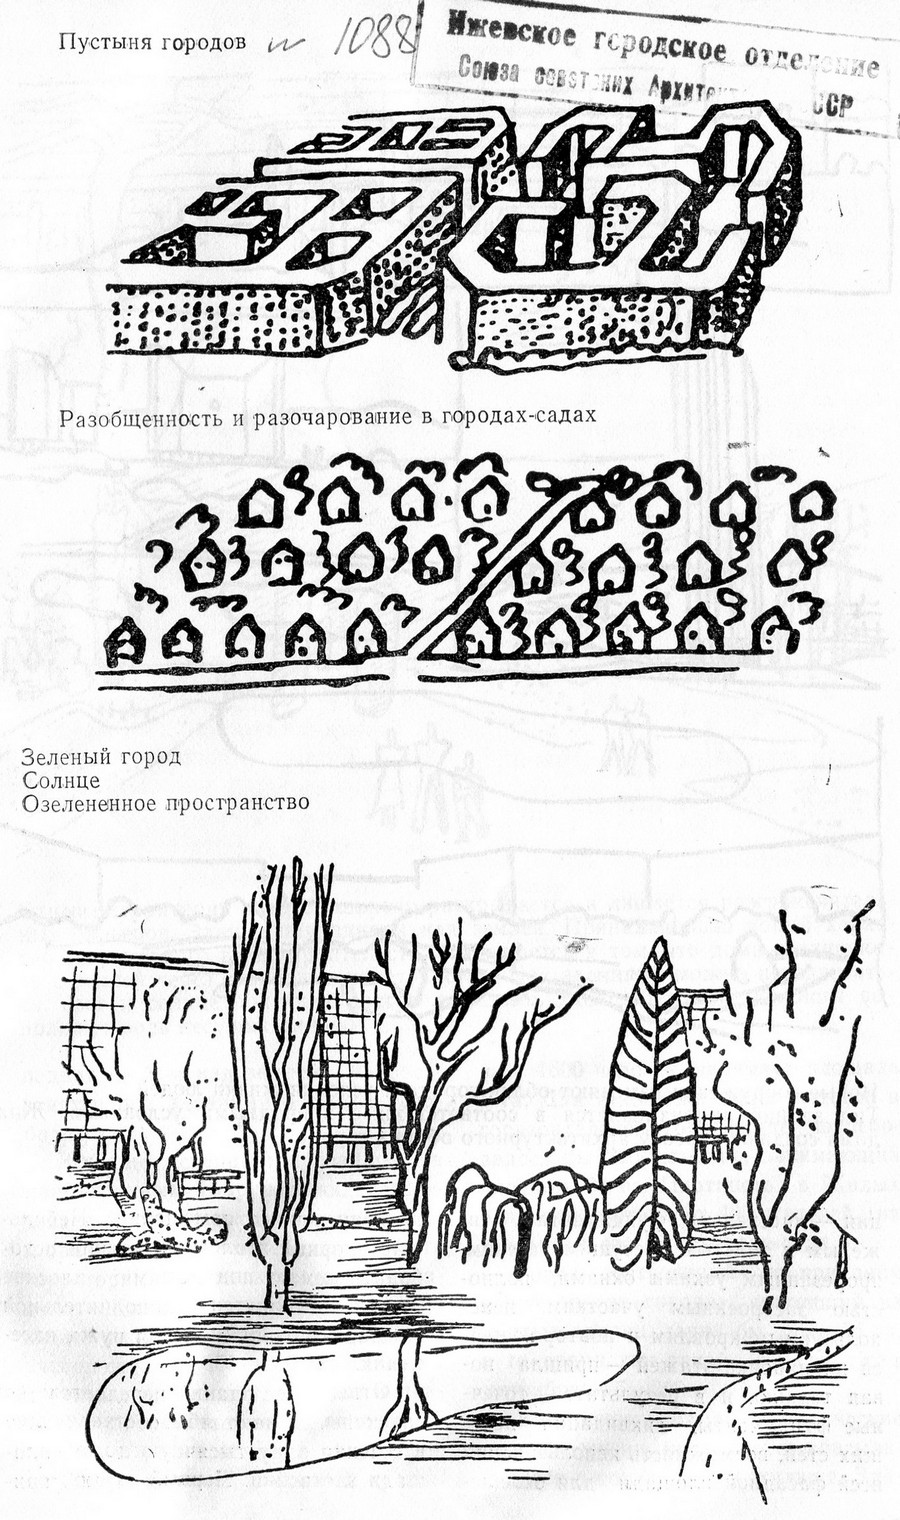 Пустыня городов | Разобщенность и разочарование в городах-садах | Зеленый город, Солнце, Озелененное пространство